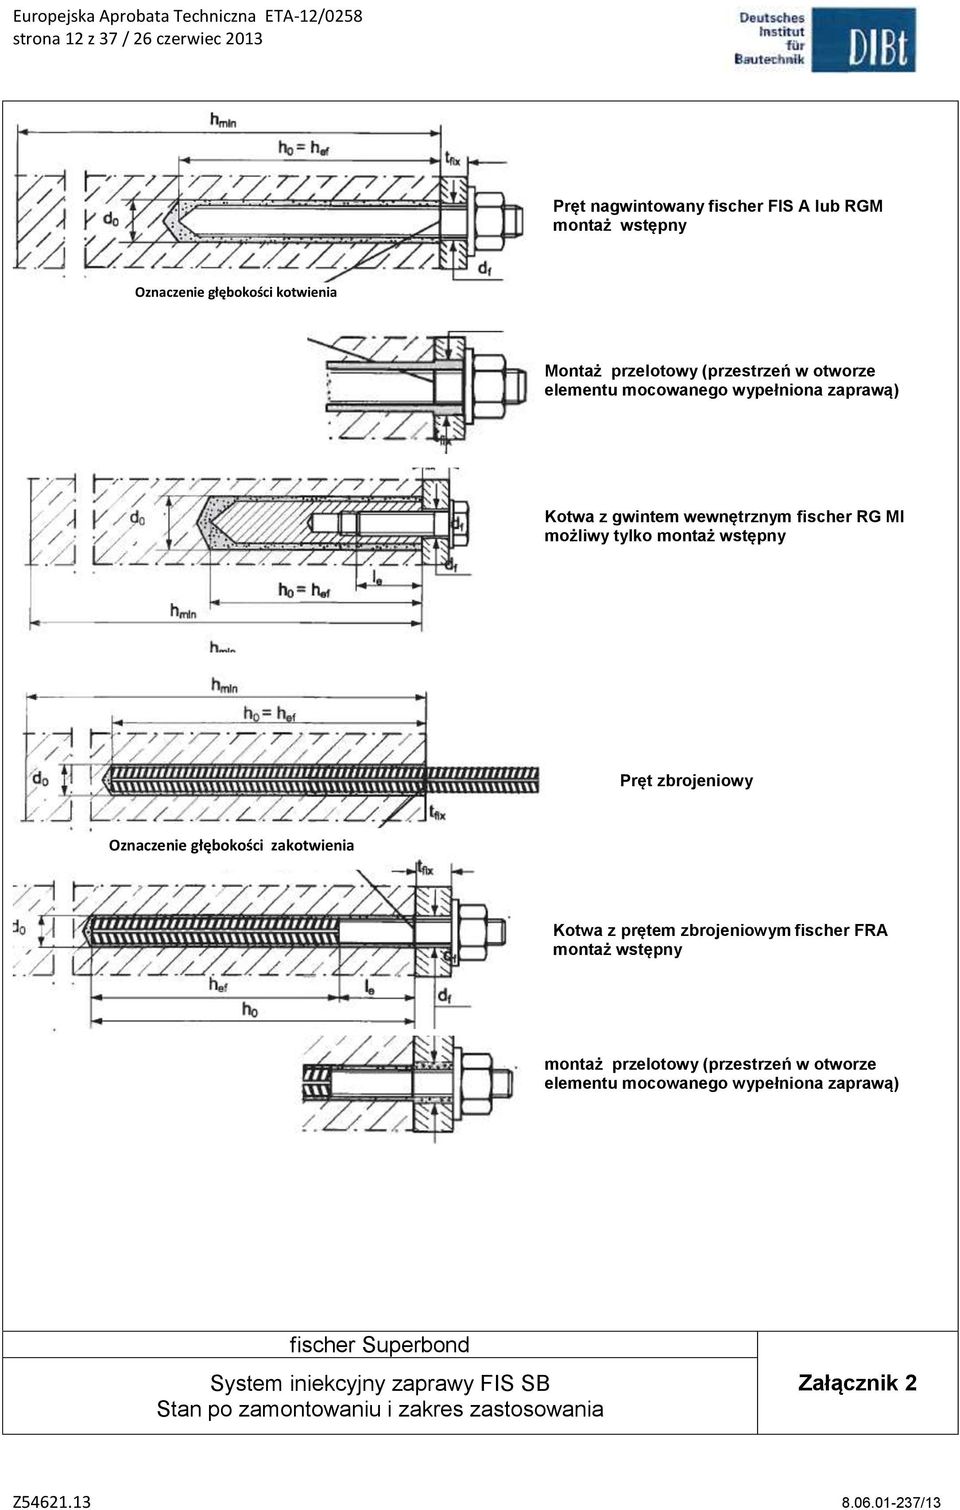 wstępny Pręt zbrojeniowy Oznaczenie głębokości zakotwienia Kotwa z prętem zbrojeniowym fischer FRA montaż wstępny montaż przelotowy